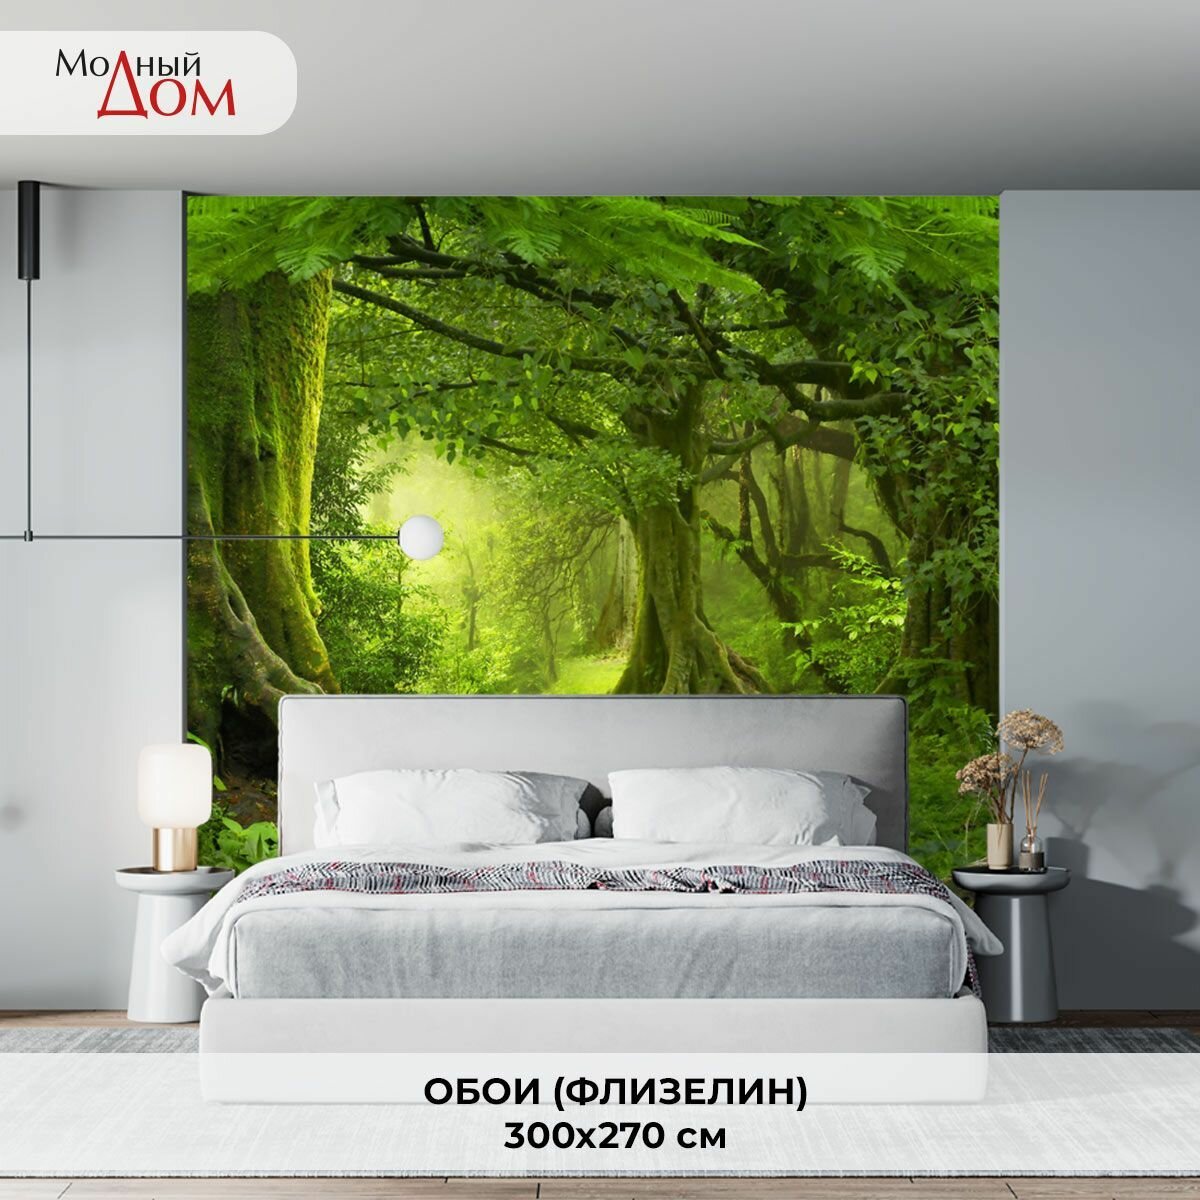 Фотообои на стену "Таинственный лес" 300x270(ШxВ) см, 3d флизелиновые обои